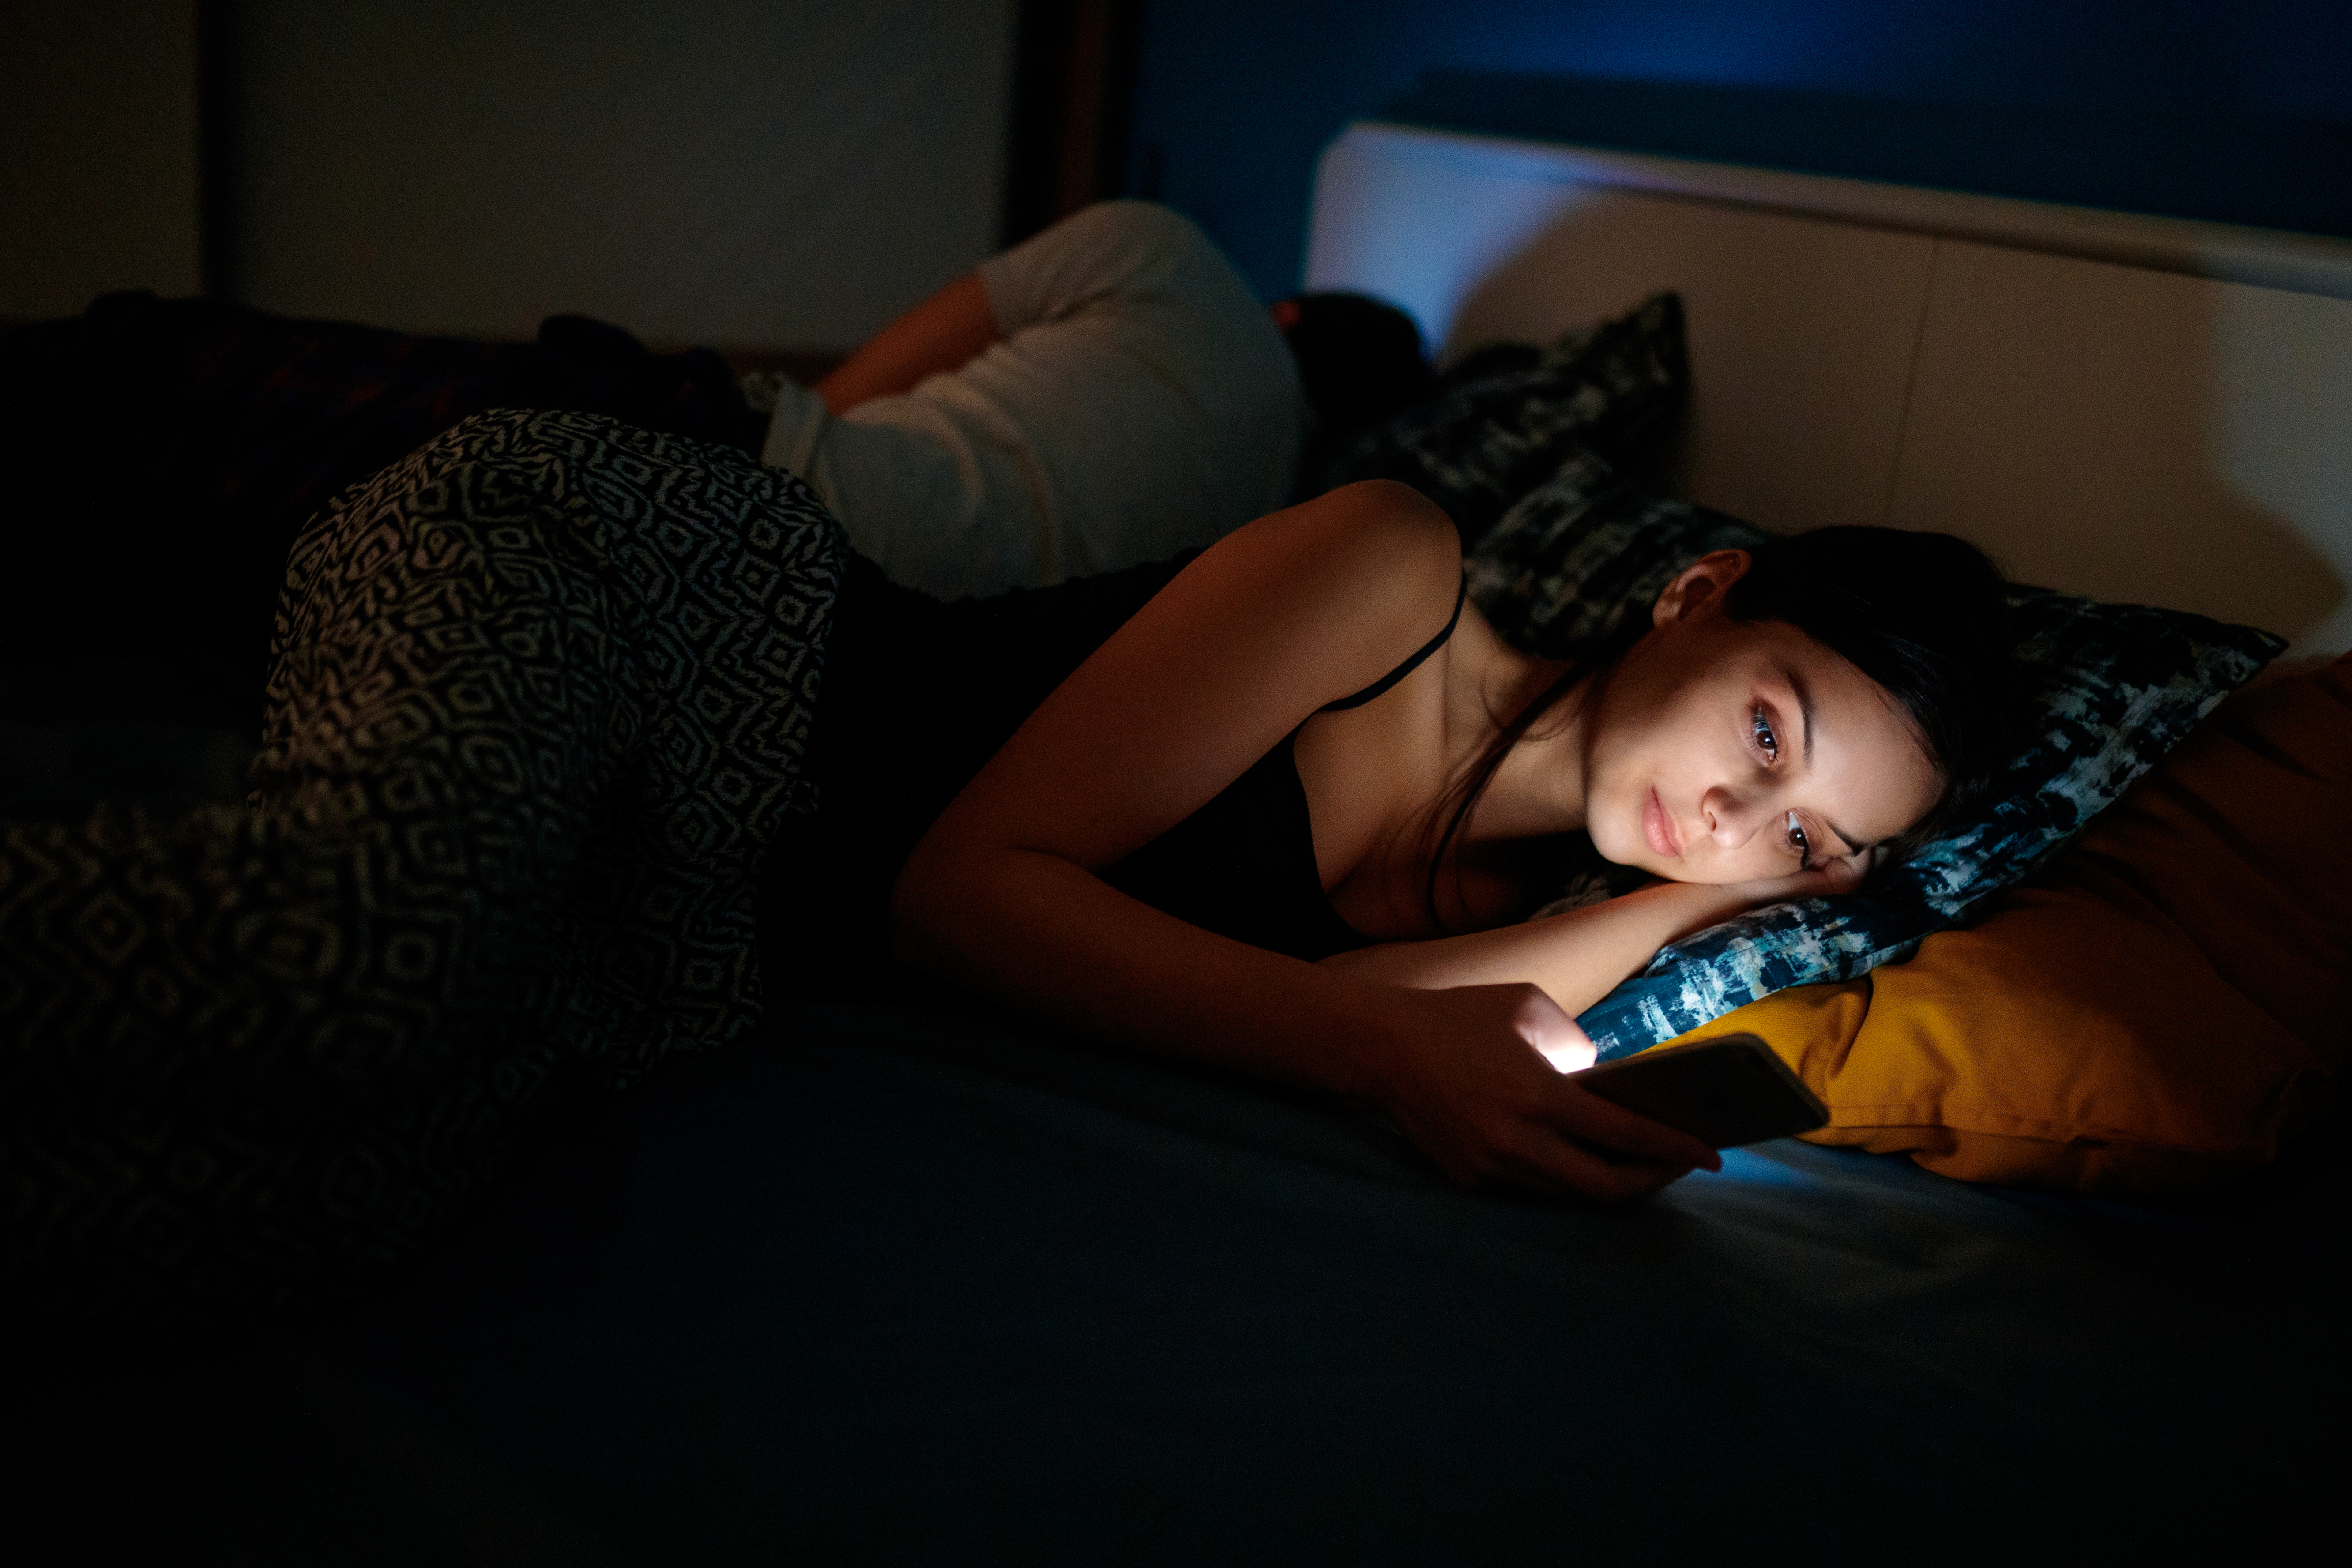 <p><strong>Електронни устройства преди лягане</strong><br />
Последни проучвания показват, че използването на електронни устройства преди лягане намалява качеството на съня.&nbsp;<br />
Проучване, показва, че около 89% от възрастните и 75% от децата имат поне едно електронно устройство в спалнята си.<br />
Редовното използване на електронни устройства преди лягане не само уврежда качеството на съня, но също така ни кара да се чувстваме уморени на следващия ден. Това &nbsp;влияе върху нашата производителност и нивата на стрес. Ако се намали употребата на електронните устройства за поне час преди лягане може значително да се подобри качеството на съня и да бъдем здрави.</p>